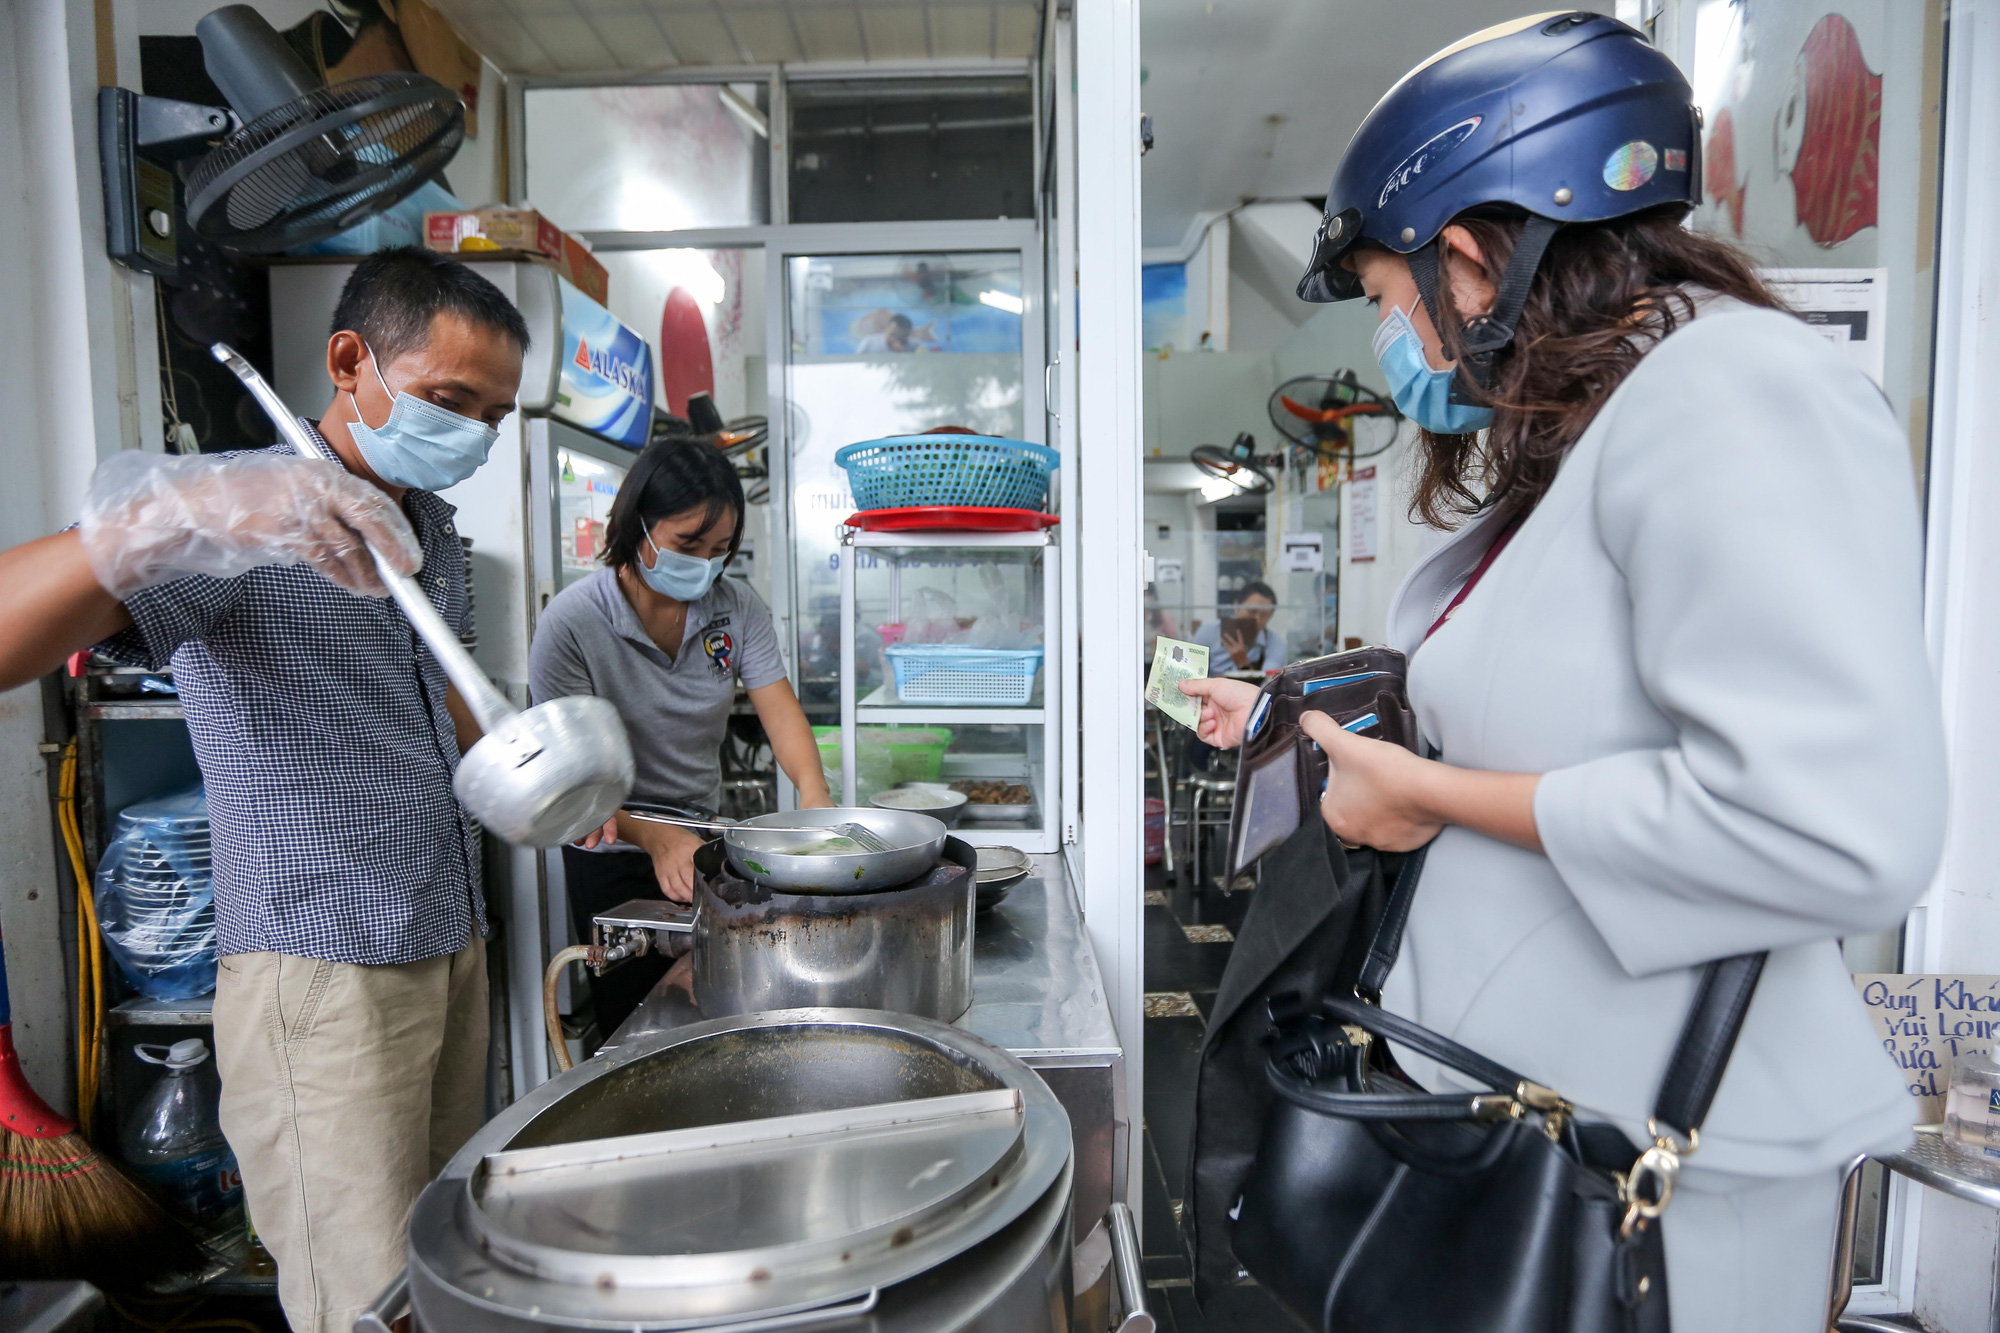 CLIP: Nườm nượp người dân đến ăn sáng tại quán ở Hà Nội - Ảnh 4.